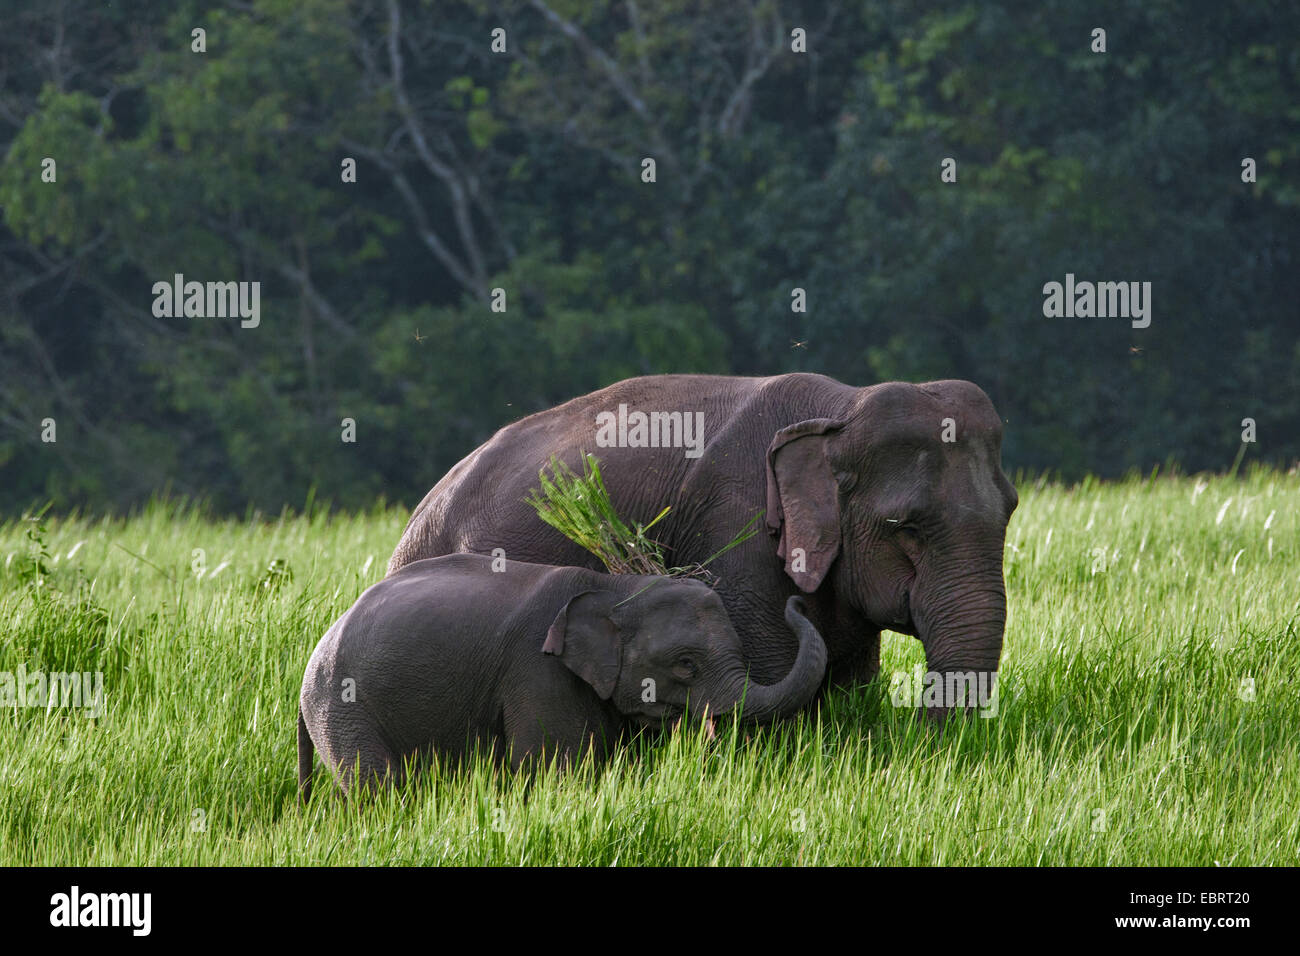 L'éléphant d'Asie, l'éléphant d'Asie (Elephas maximus), Femme avec elephant calf le pâturage, la Thaïlande, le parc national Khao Yai Banque D'Images